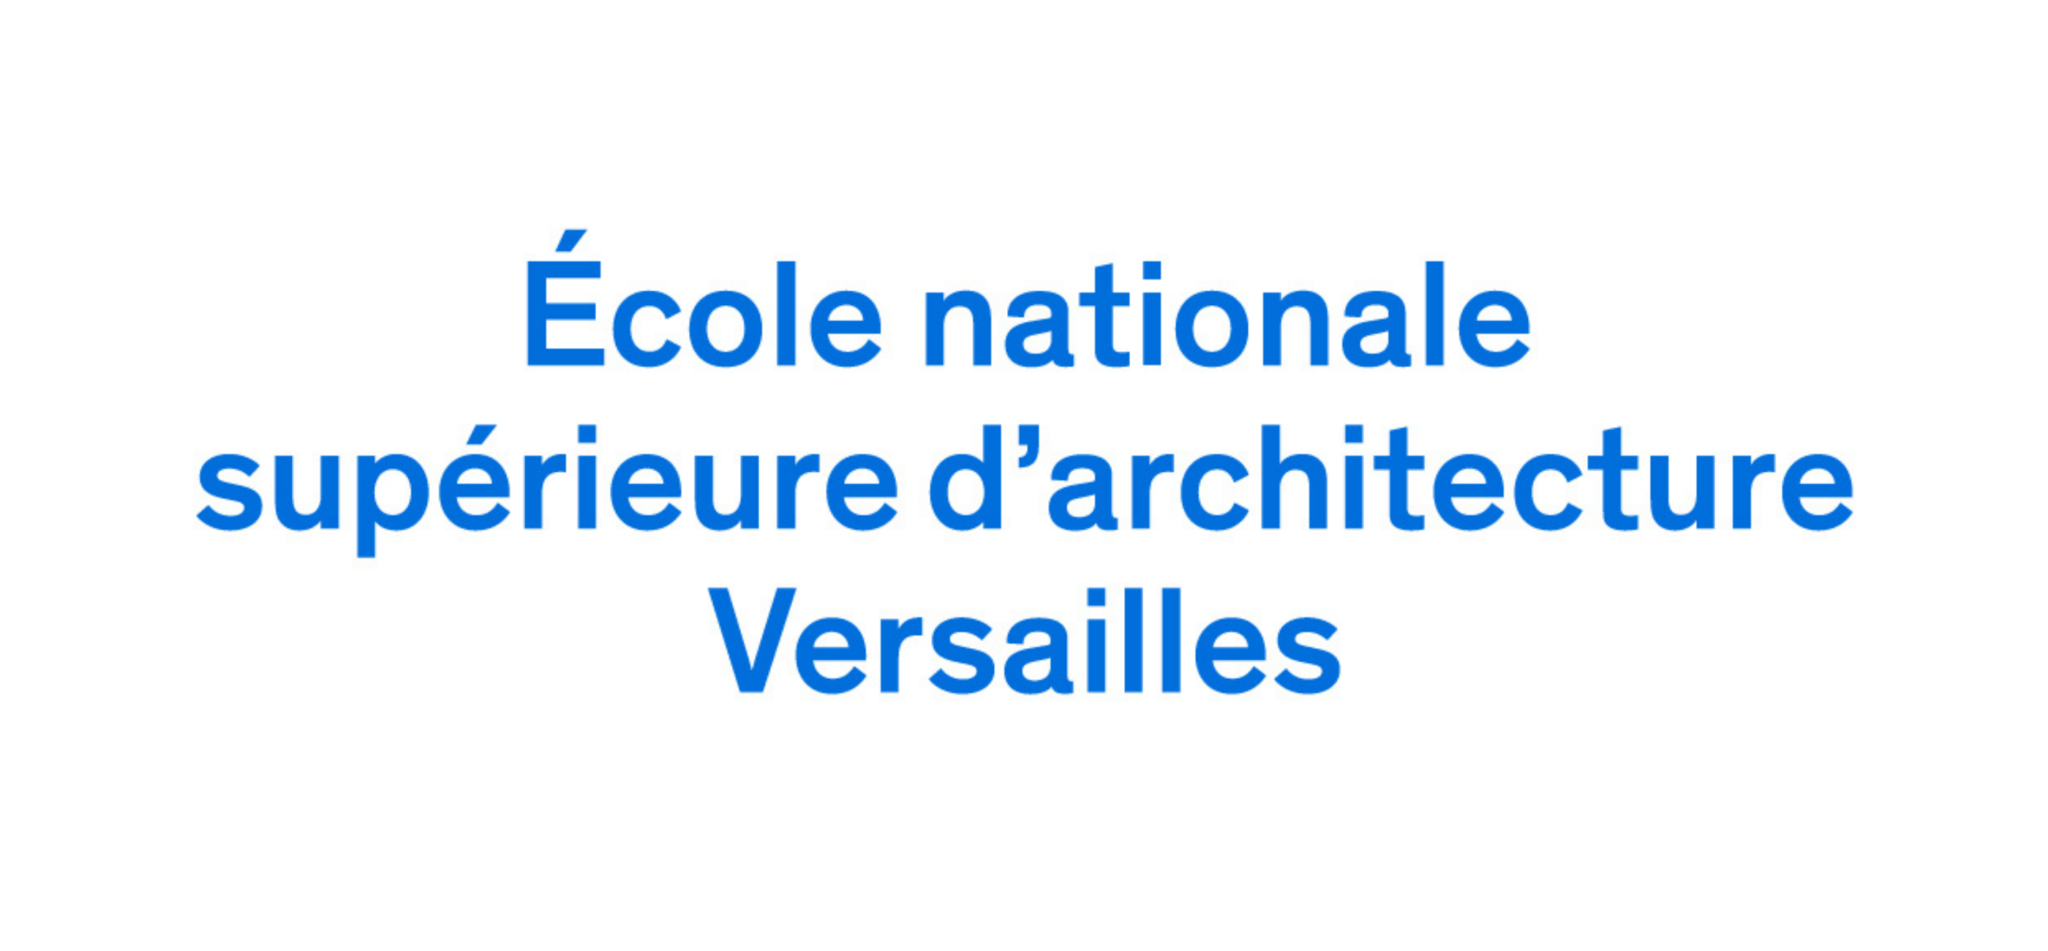 21 Ecole nationale supérieur d'architecture Versailles